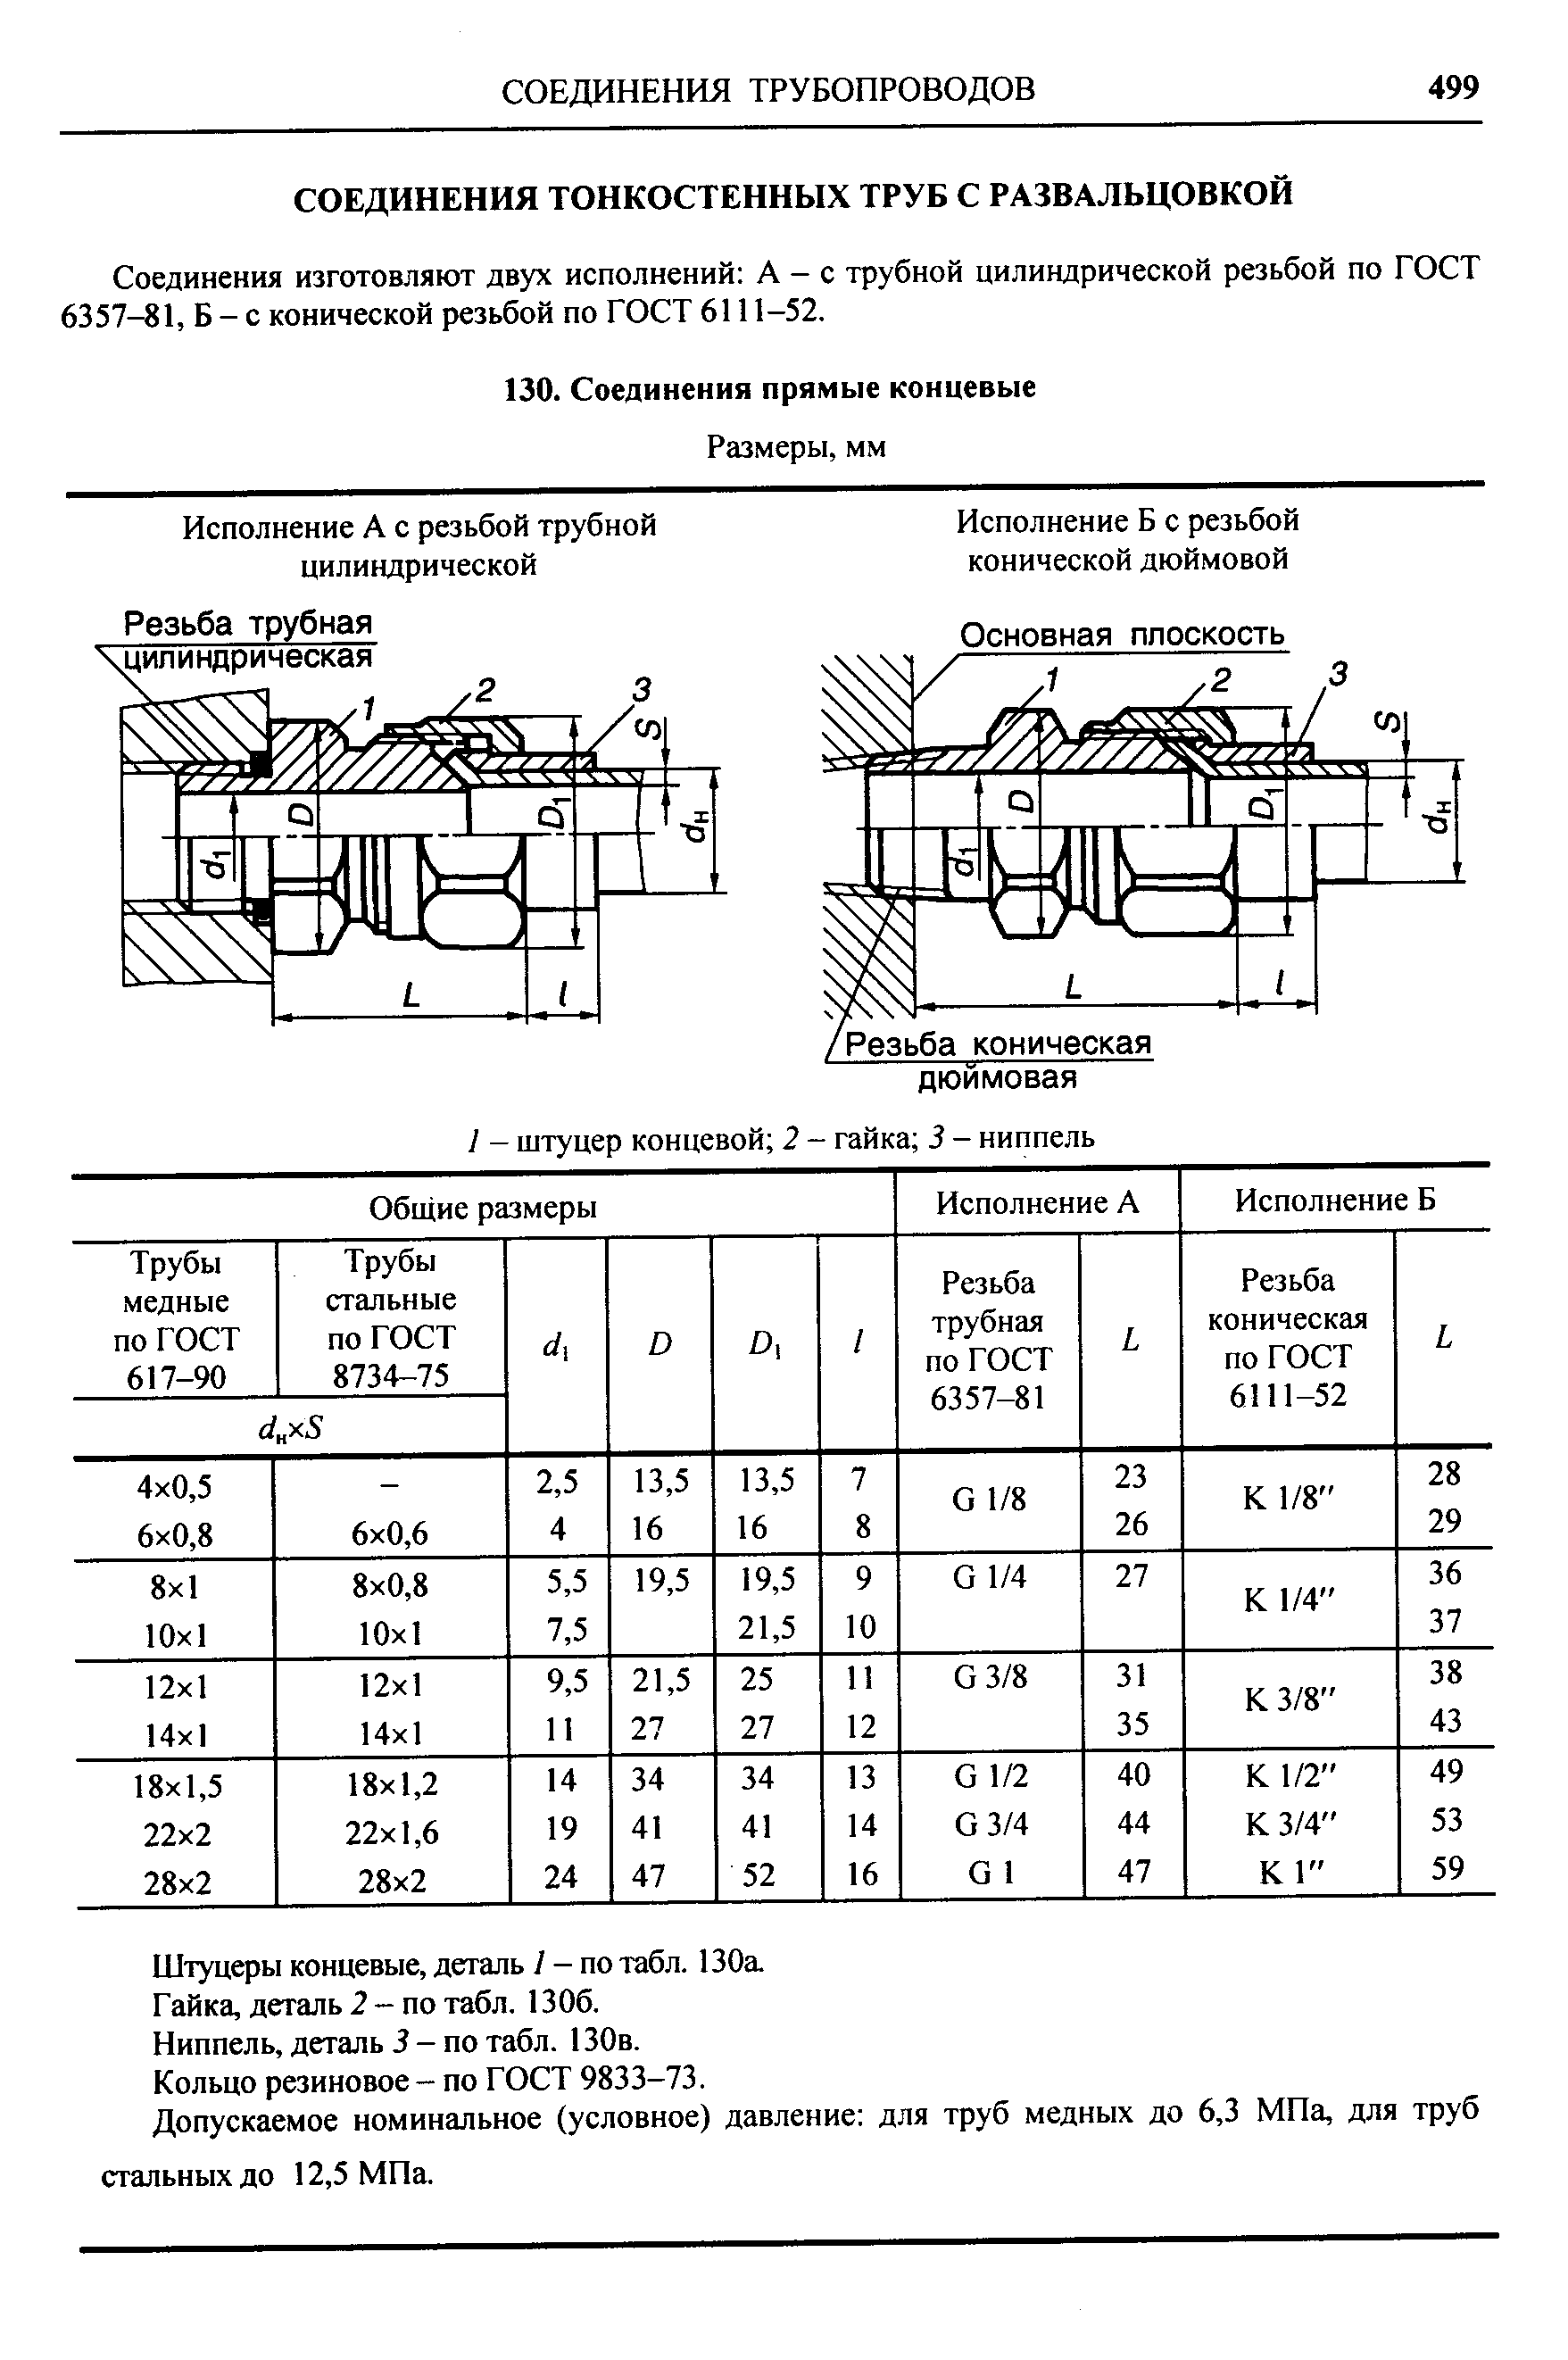 Соединения изготовляют двух исполнений А - с трубной цилиндрической резьбой по ГОСТ 6357-81, Б - с конической резьбой по ГОСТ 6111-52.
